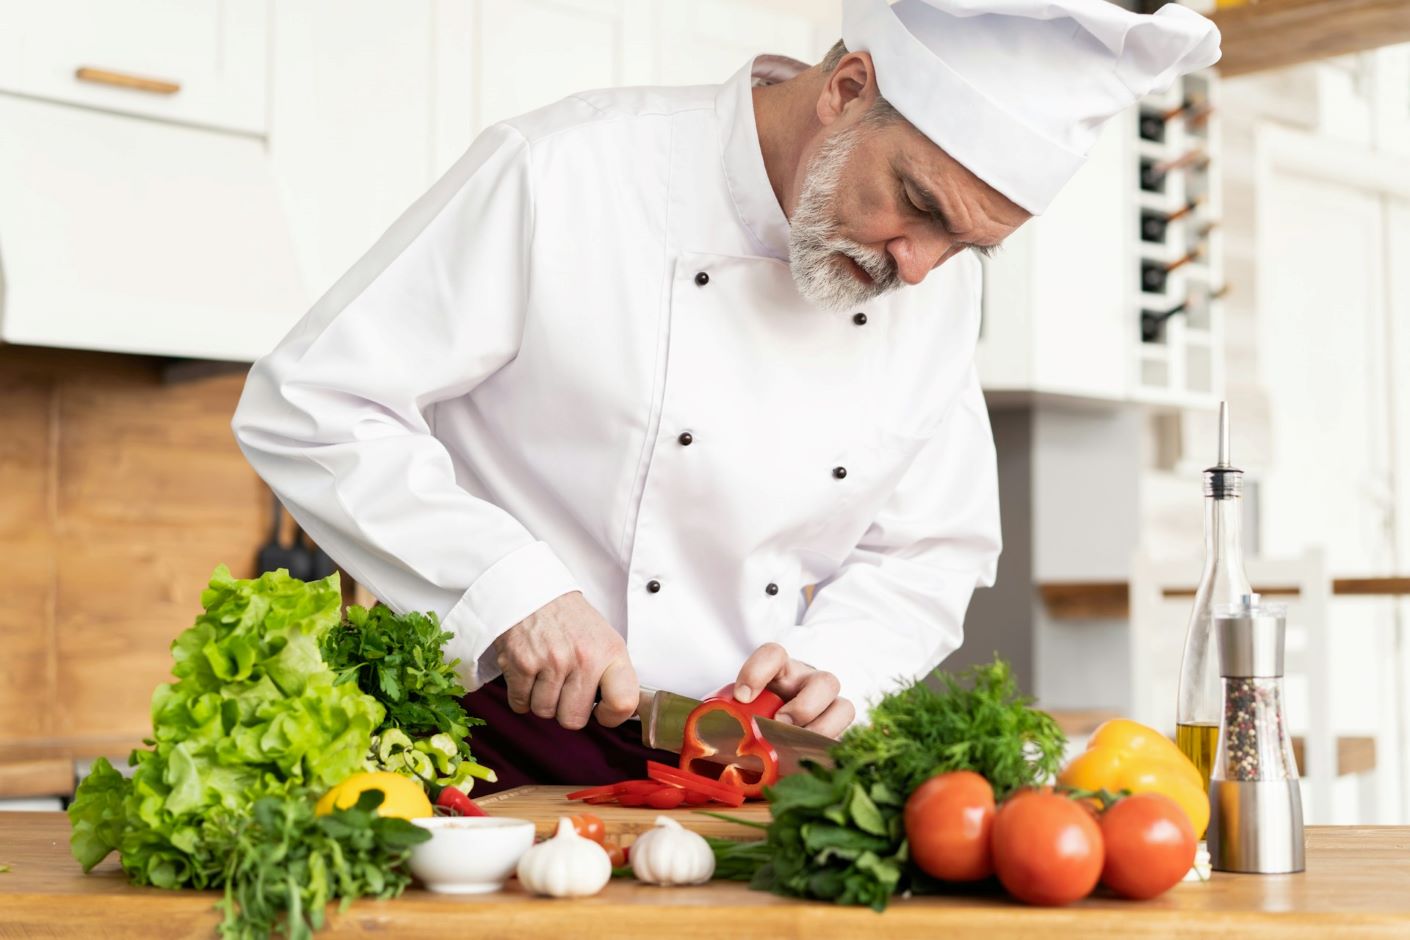 Chef cutting a red pepper